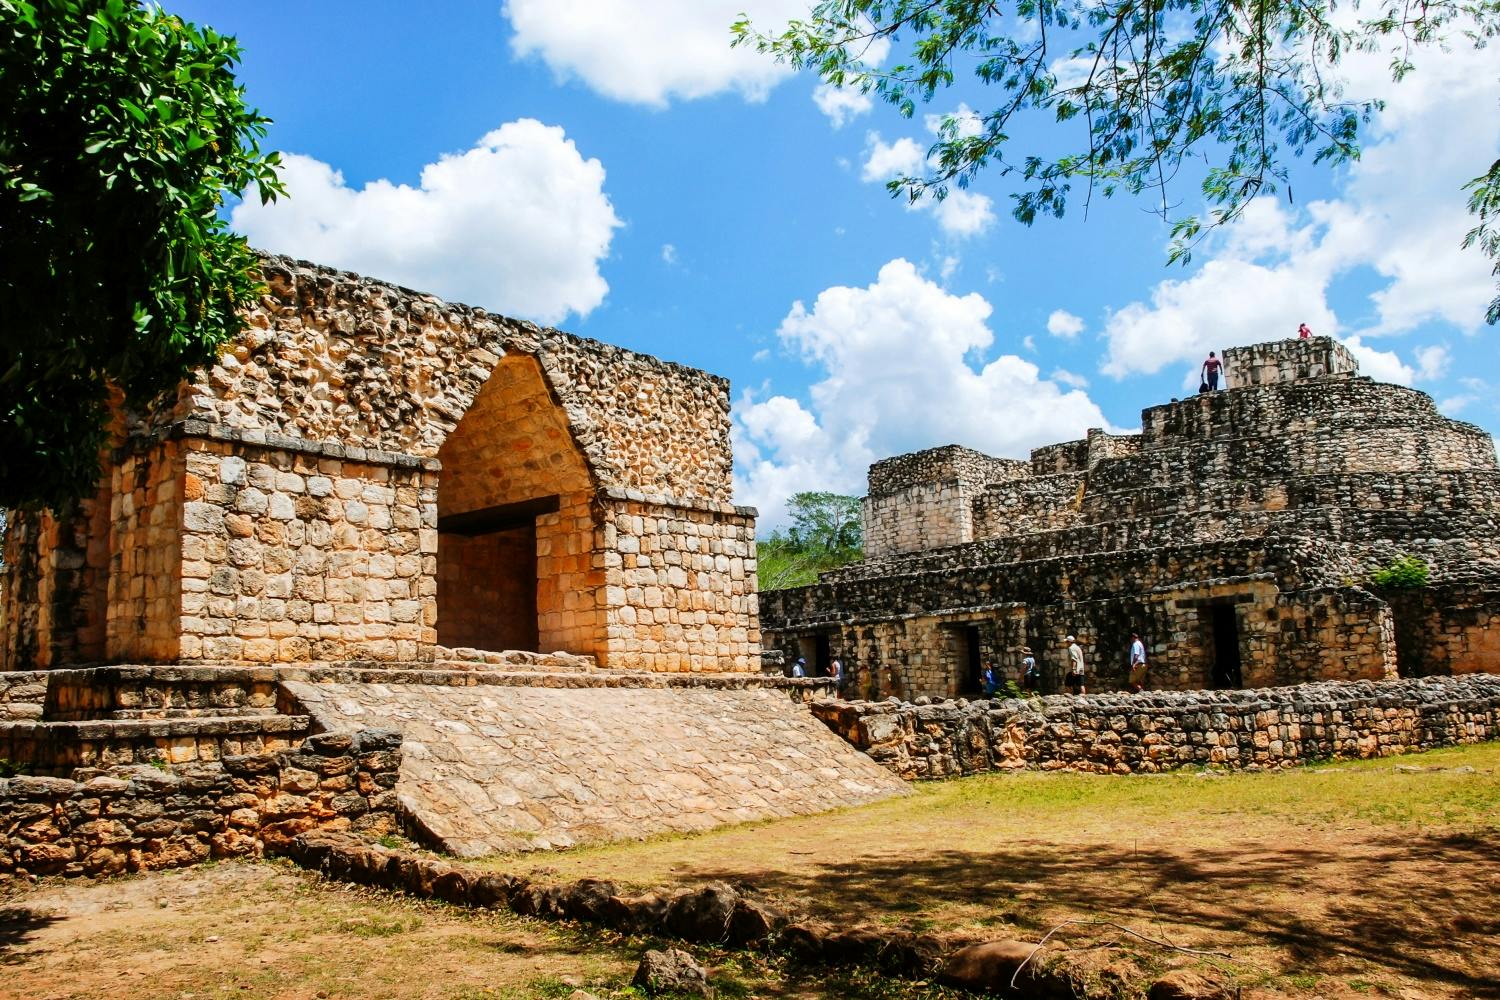 Self-guided tour of 4 Mayan sites: Chichén Itzá, Tulum, Coba, and Ek  Balam